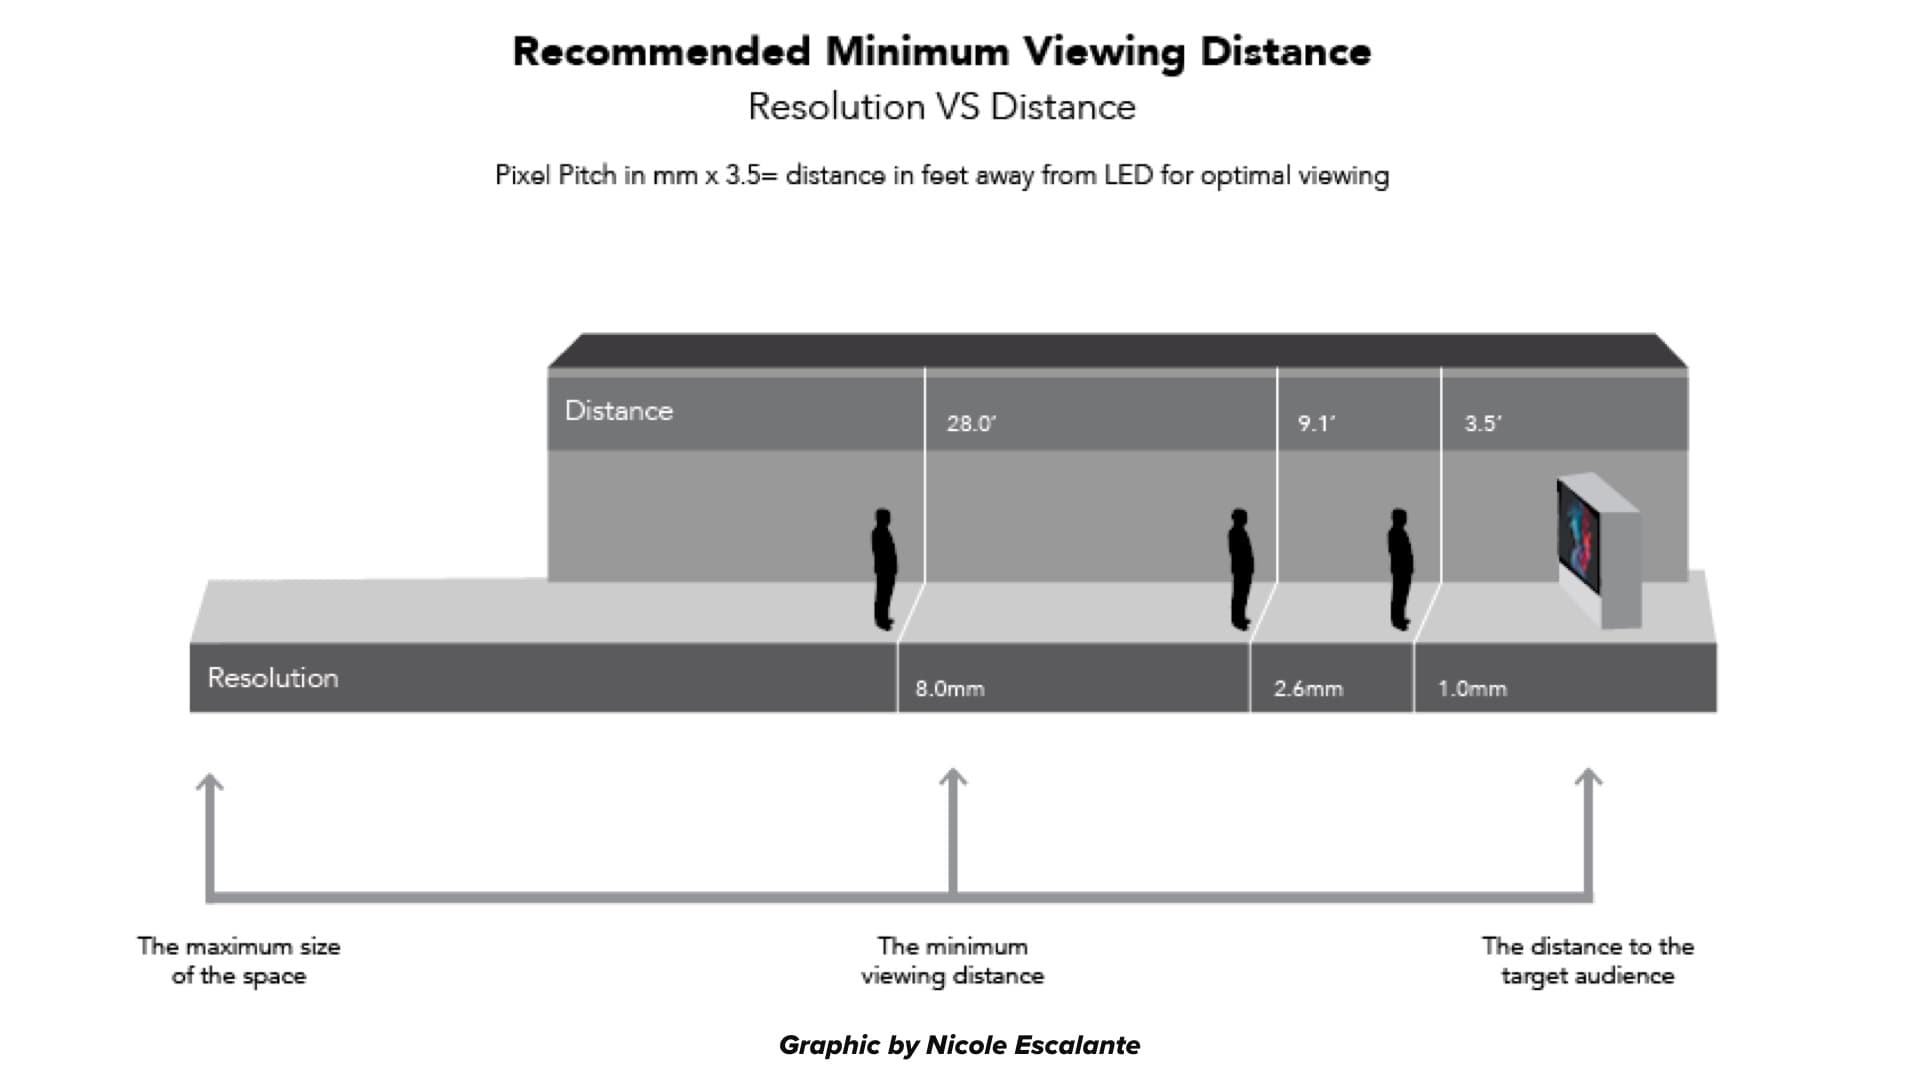 LED viewing distances